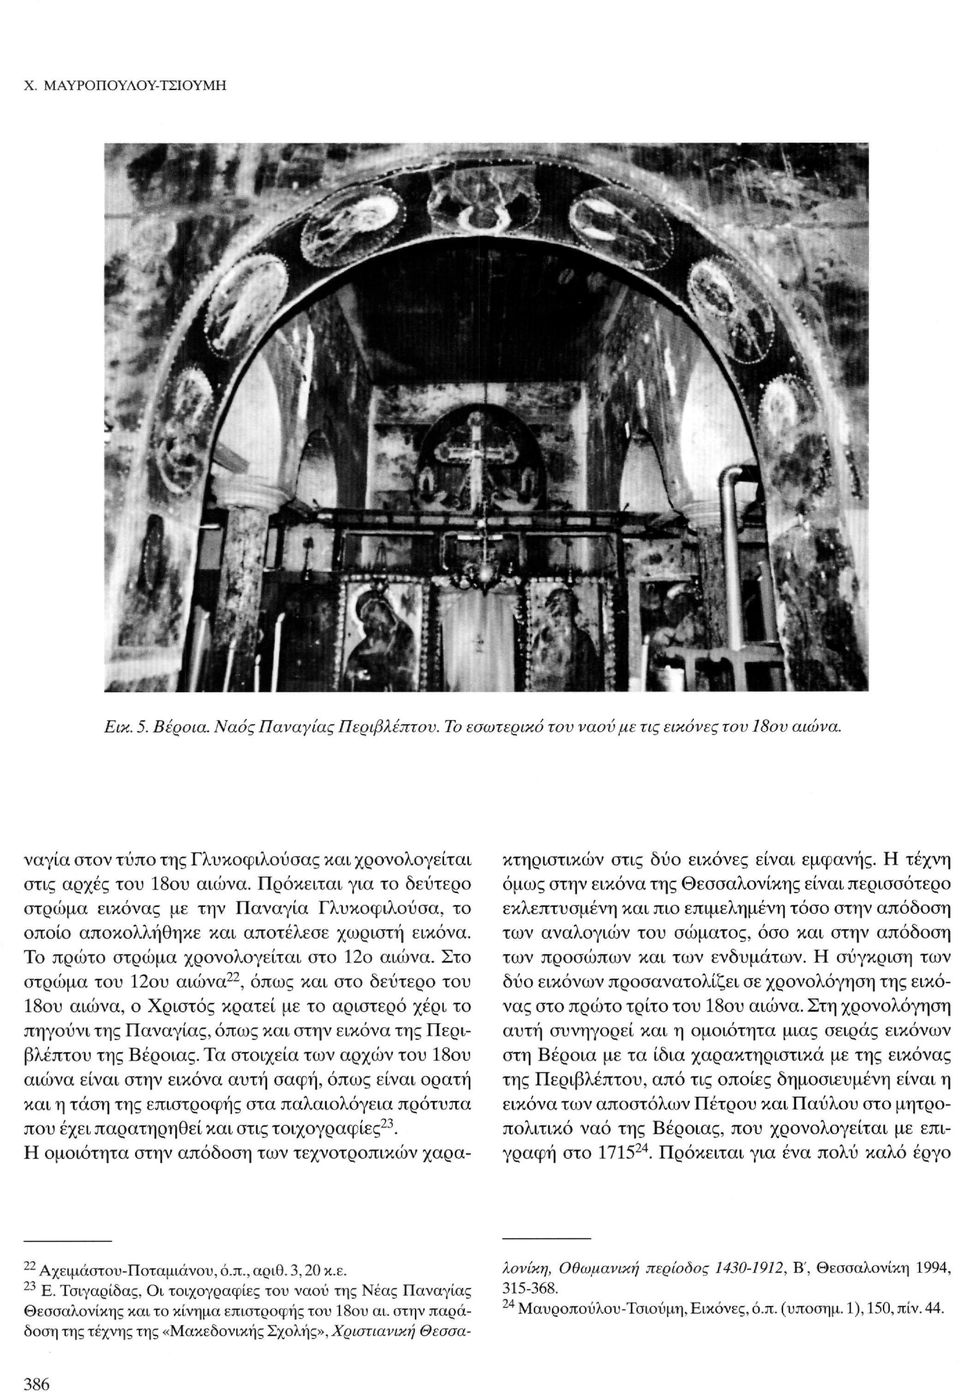 Στο στρώμα του 12ου αιώνα 22, όπως και στο δεύτερο του 18ου αιώνα, ο Χριστός κρατεί με το αριστερό χέρι το πηγούνι της Παναγίας, όπως και στην εικόνα της Περιβλέπτου της Βέροιας.